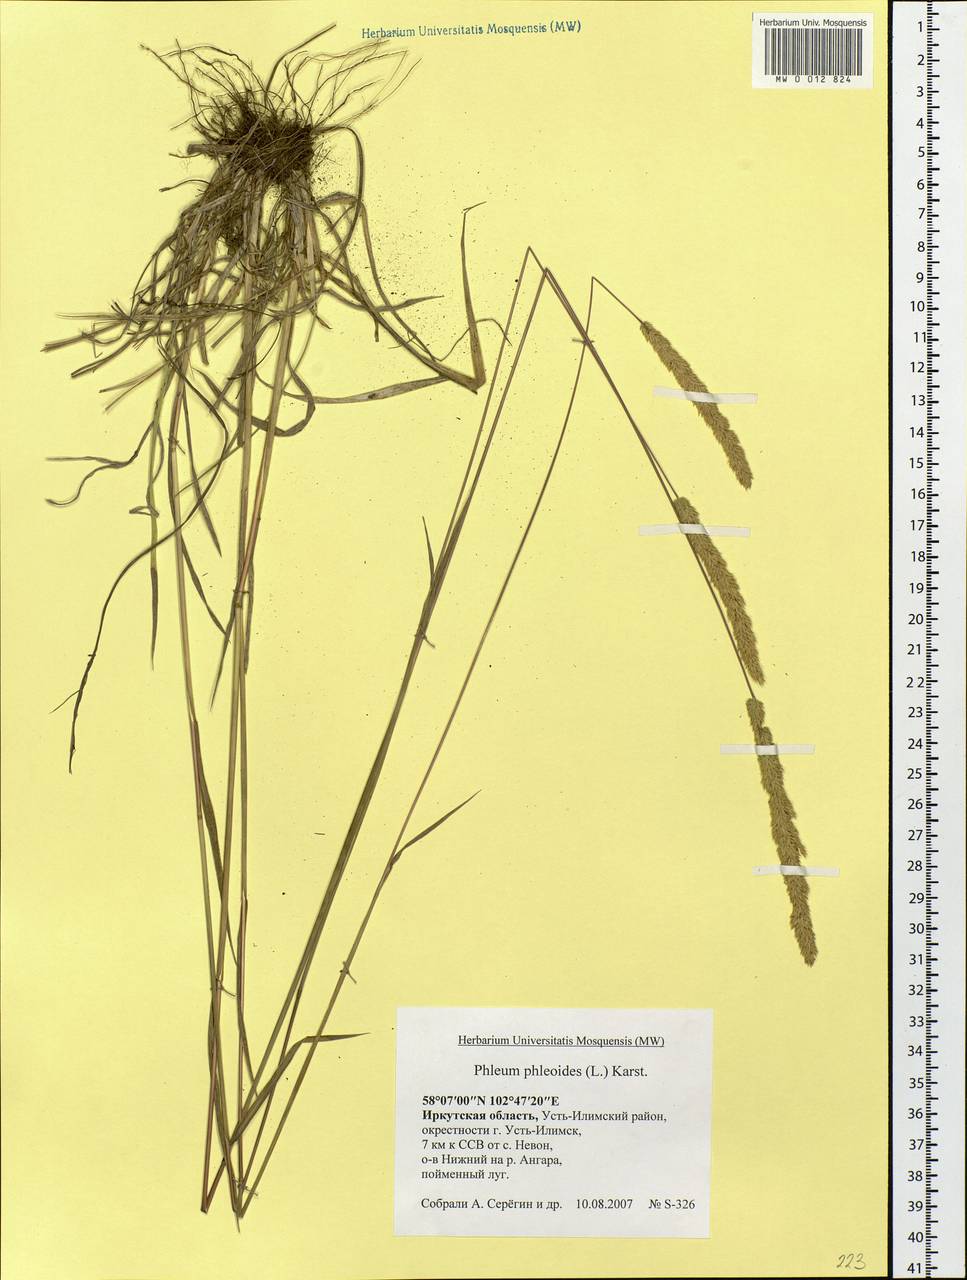 Phleum phleoides (L.) H.Karst., Siberia, Baikal & Transbaikal region (S4) (Russia)